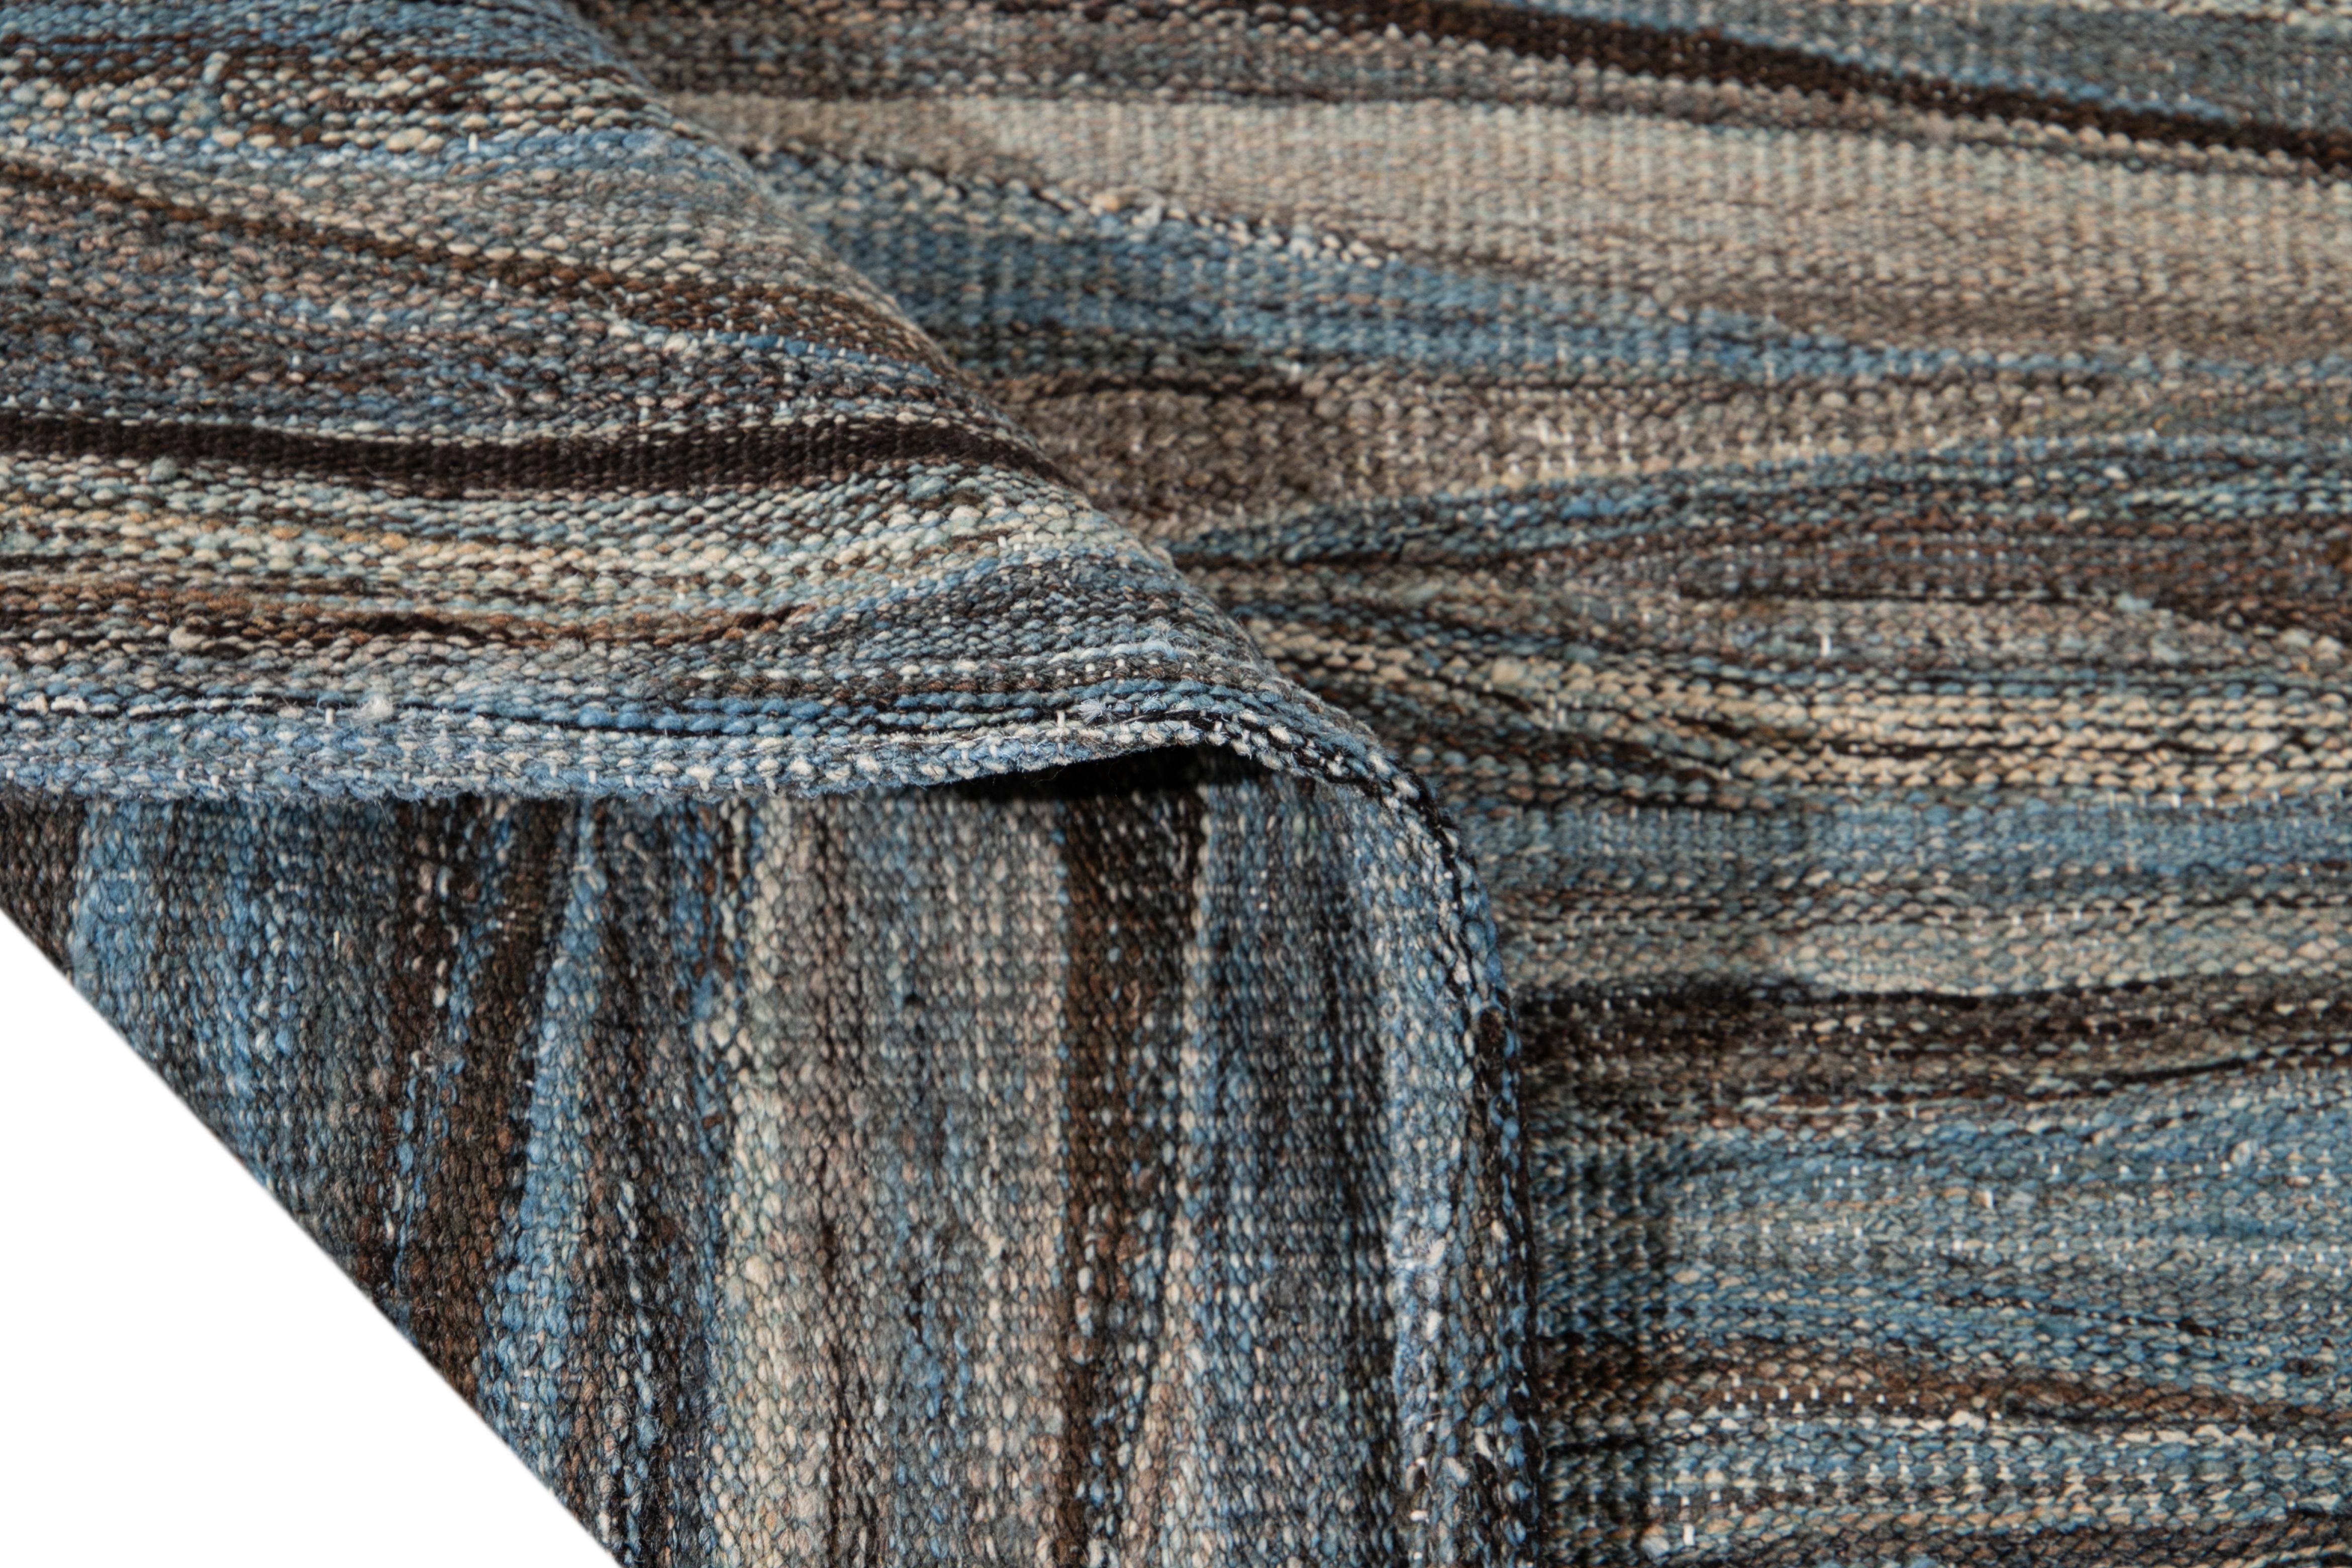 Magnifique tapis Kilim moderne en laine tissé à plat, fait à la main, avec un champ gris. Ce tapis Kilim a des accents de brun et de bleu dans un magnifique design expressionniste abstrait.

Ce tapis mesure : 9' x 11'7